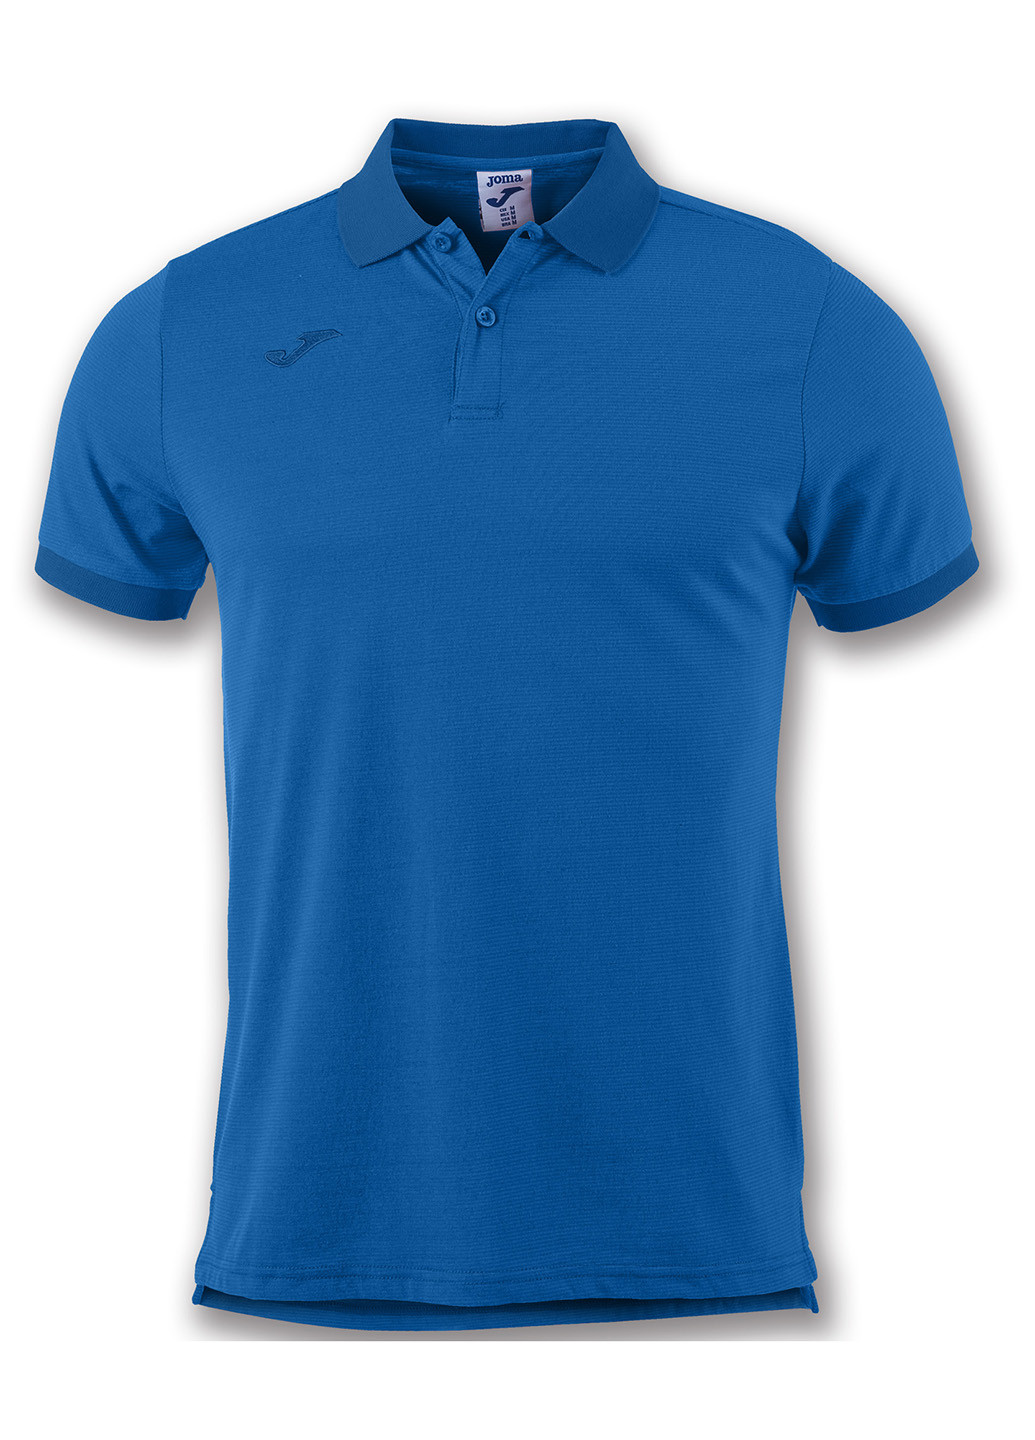 Синяя футболка-поло для мужчин Joma однотонная